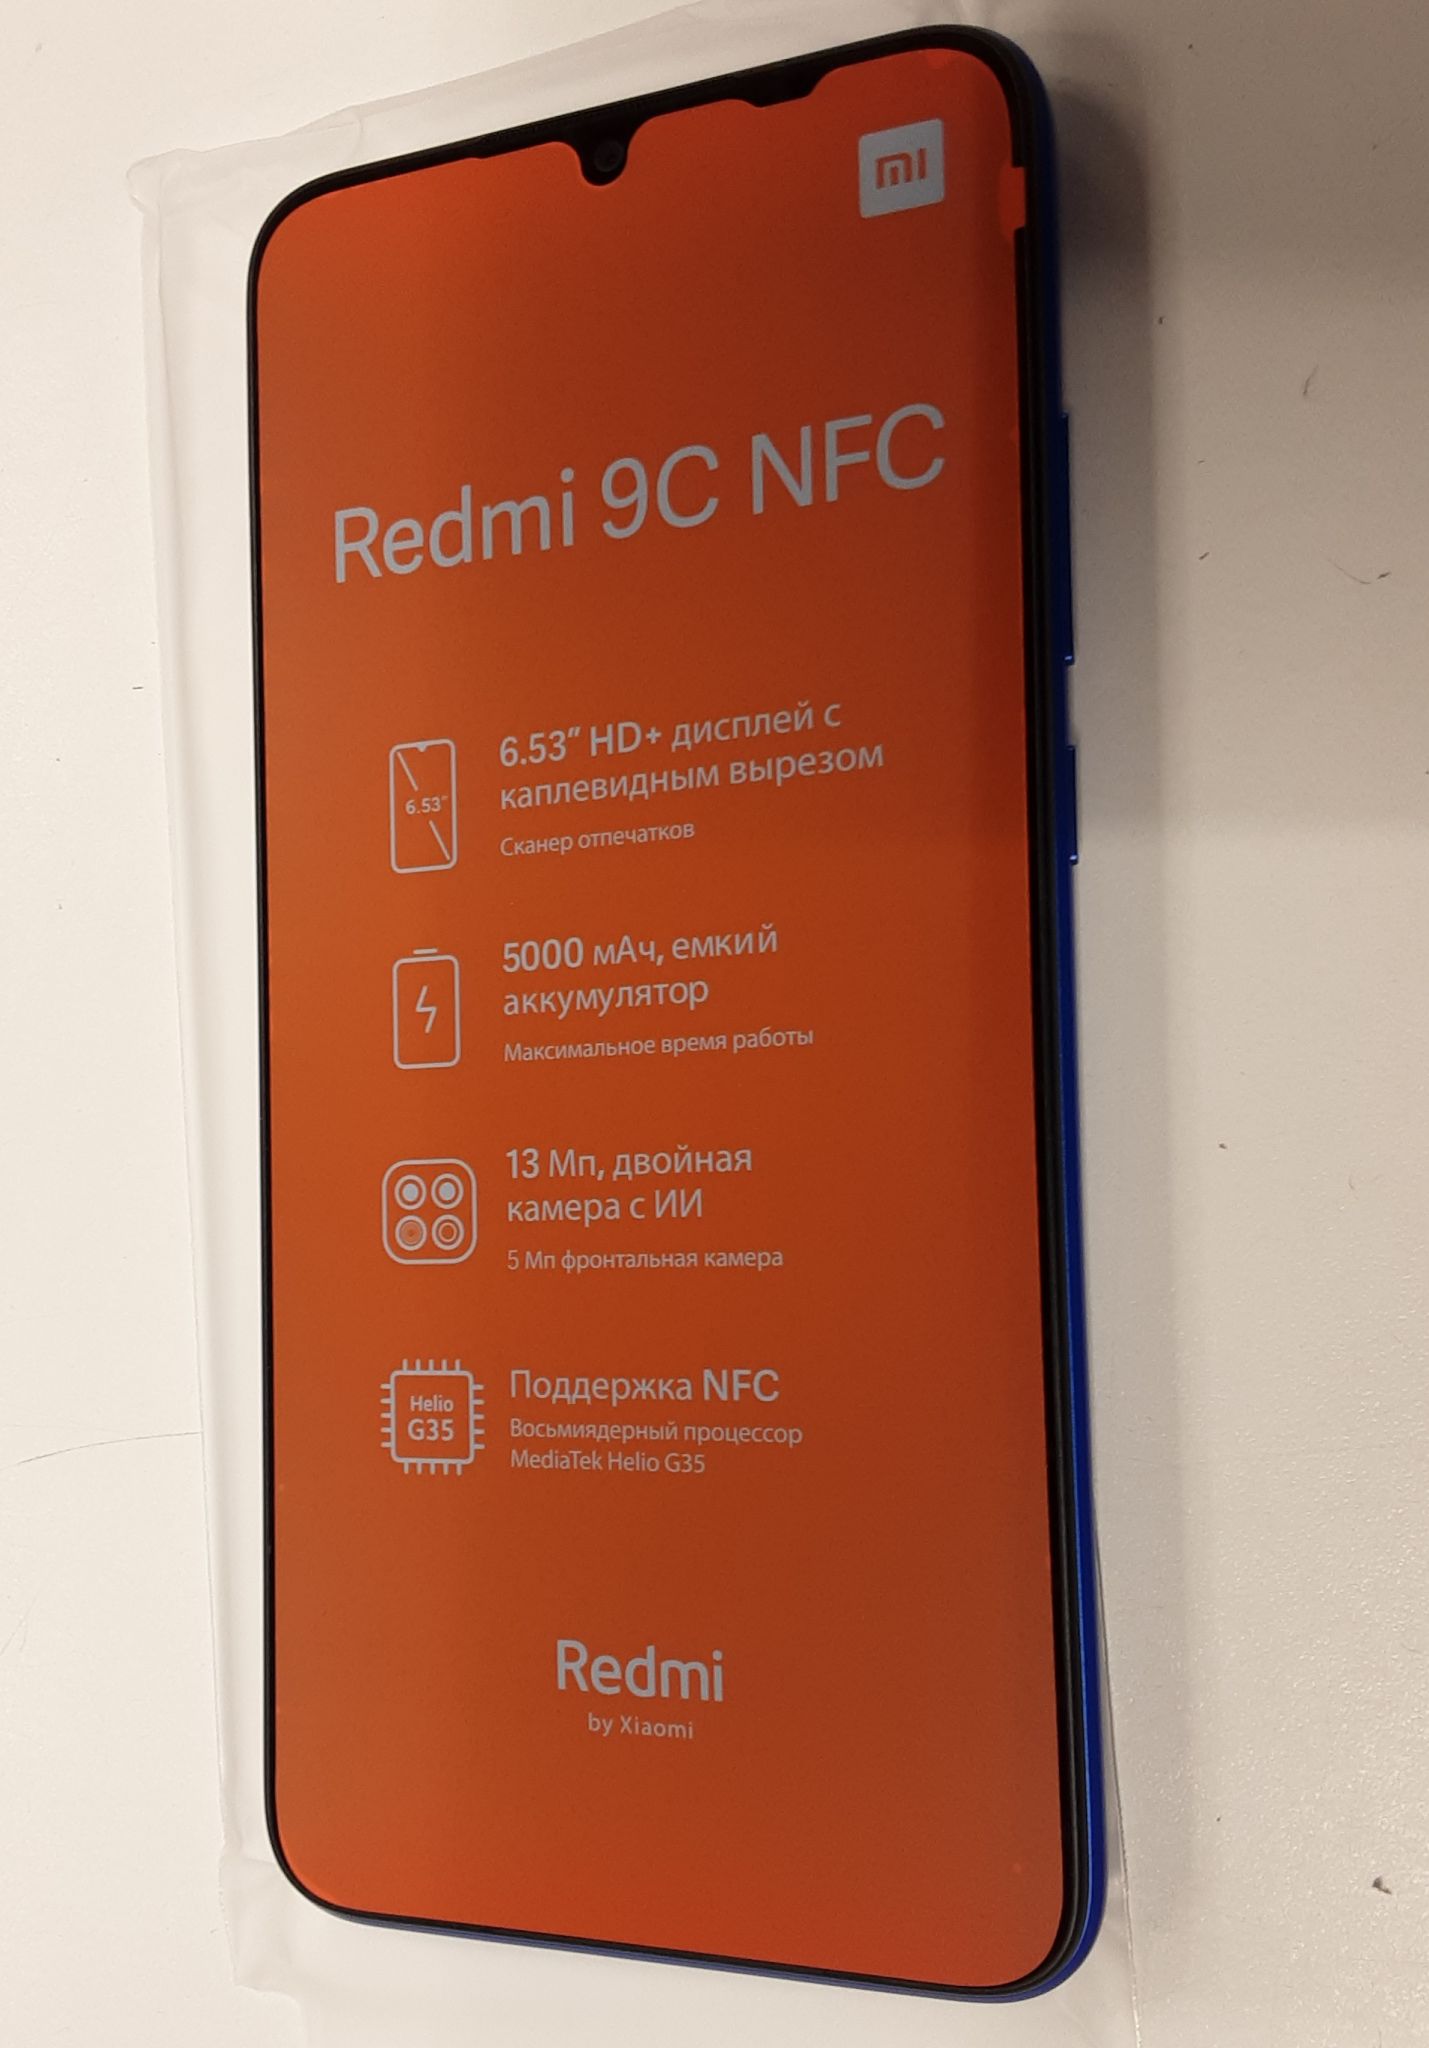 Redmi 9 3 64gb. Redmi 9c. Смартфон Xiaomi Redmi 9c 3/64. Смартфон Xiaomi 9c 3 64gb. Xiaomi Redmi 9c комплектация.